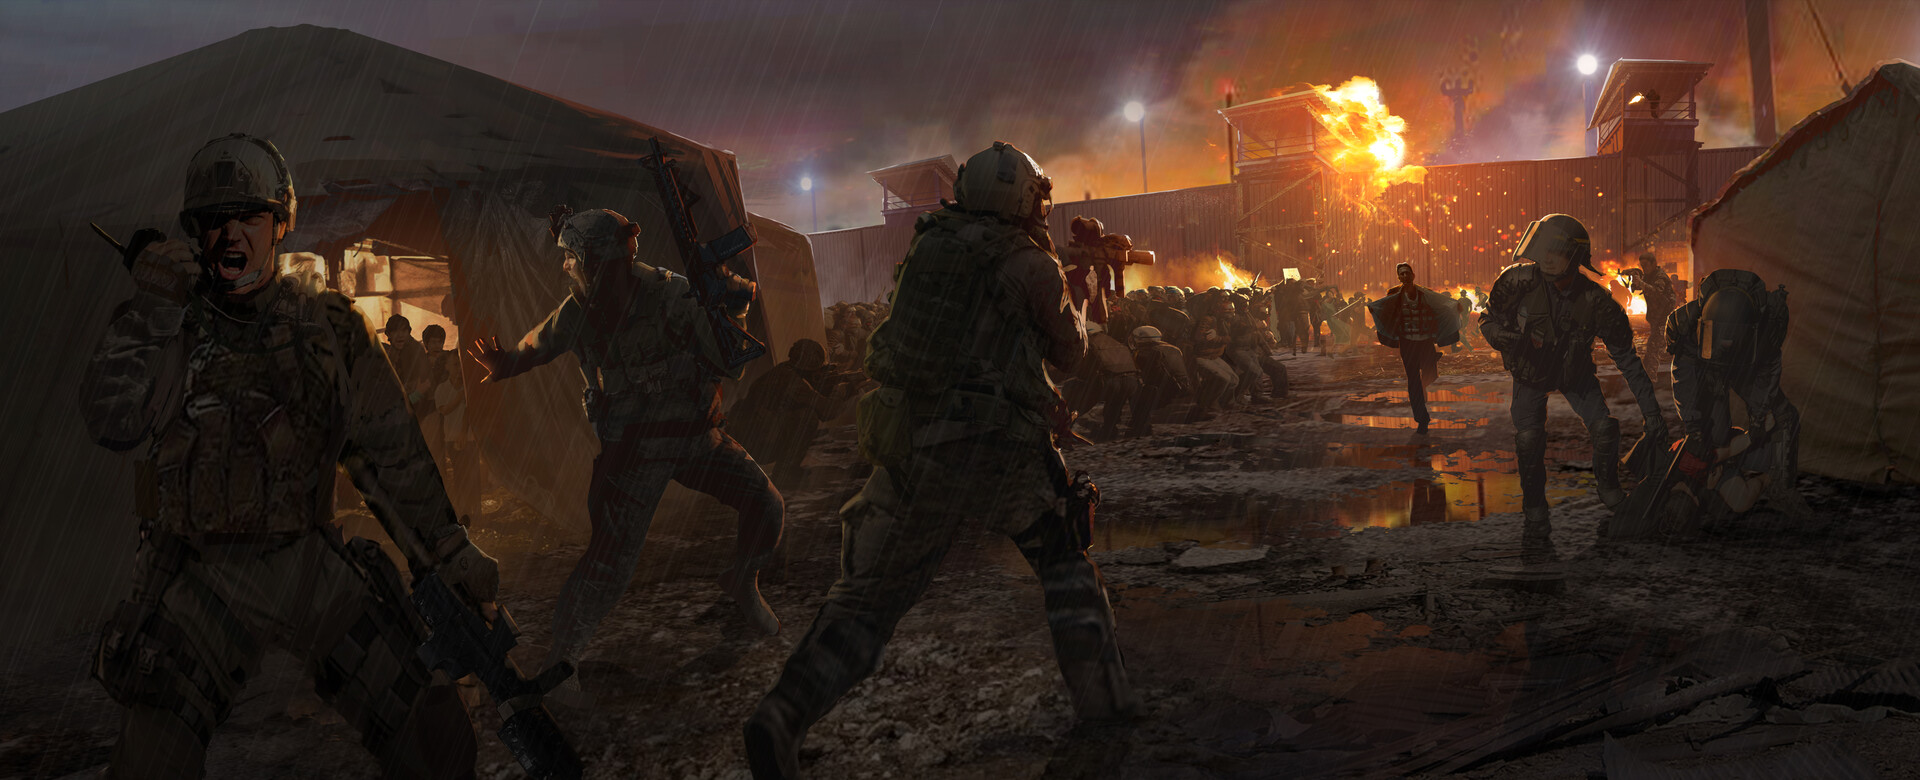 ArtStation - Call of Duty: Advanced Warfare, jesse lee